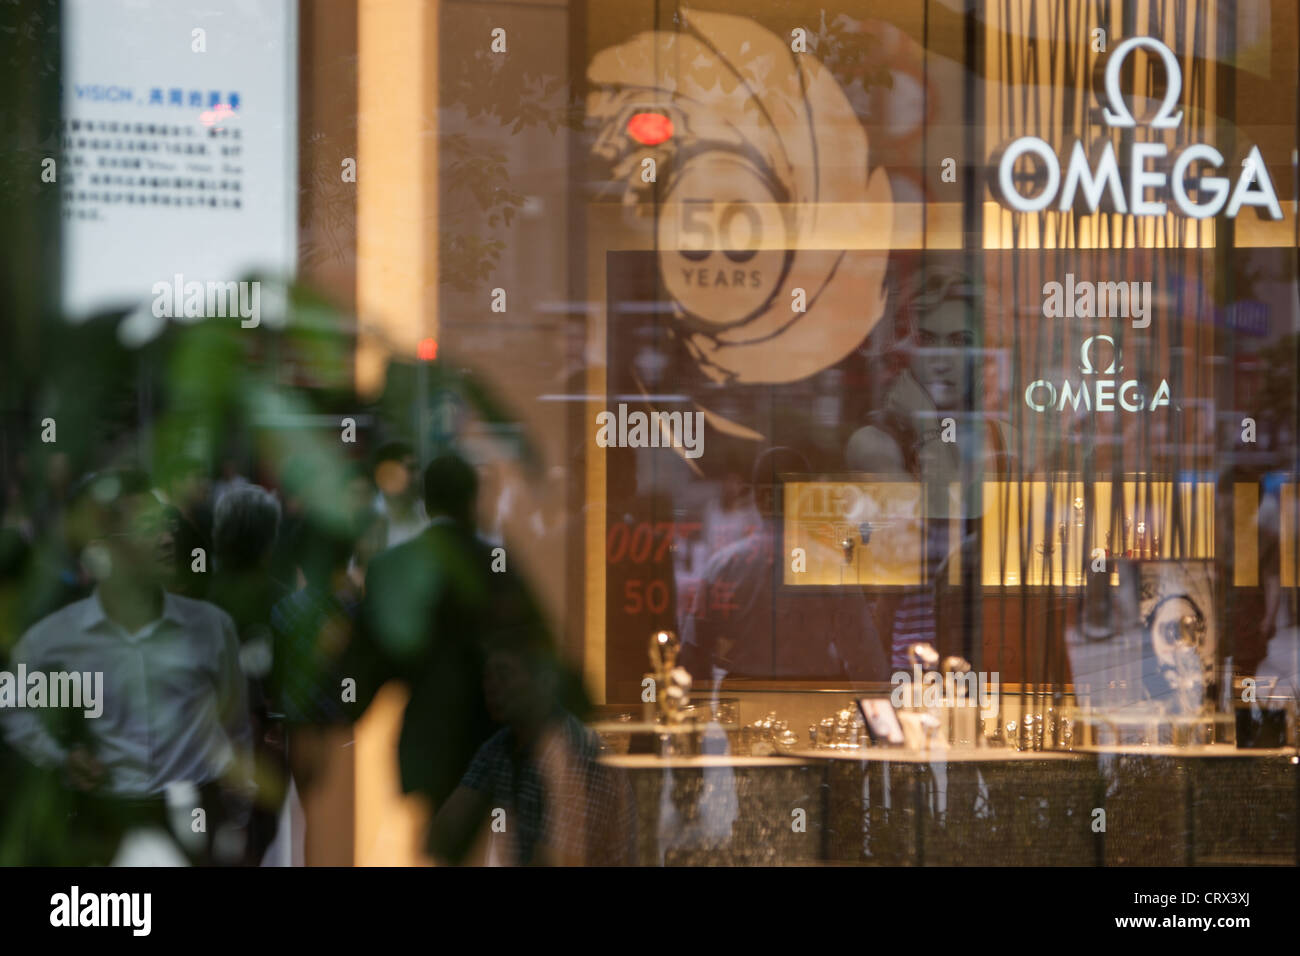 La marque Omega watch shop dans la région de Nanjing Road, à Shanghai, en Chine. Banque D'Images